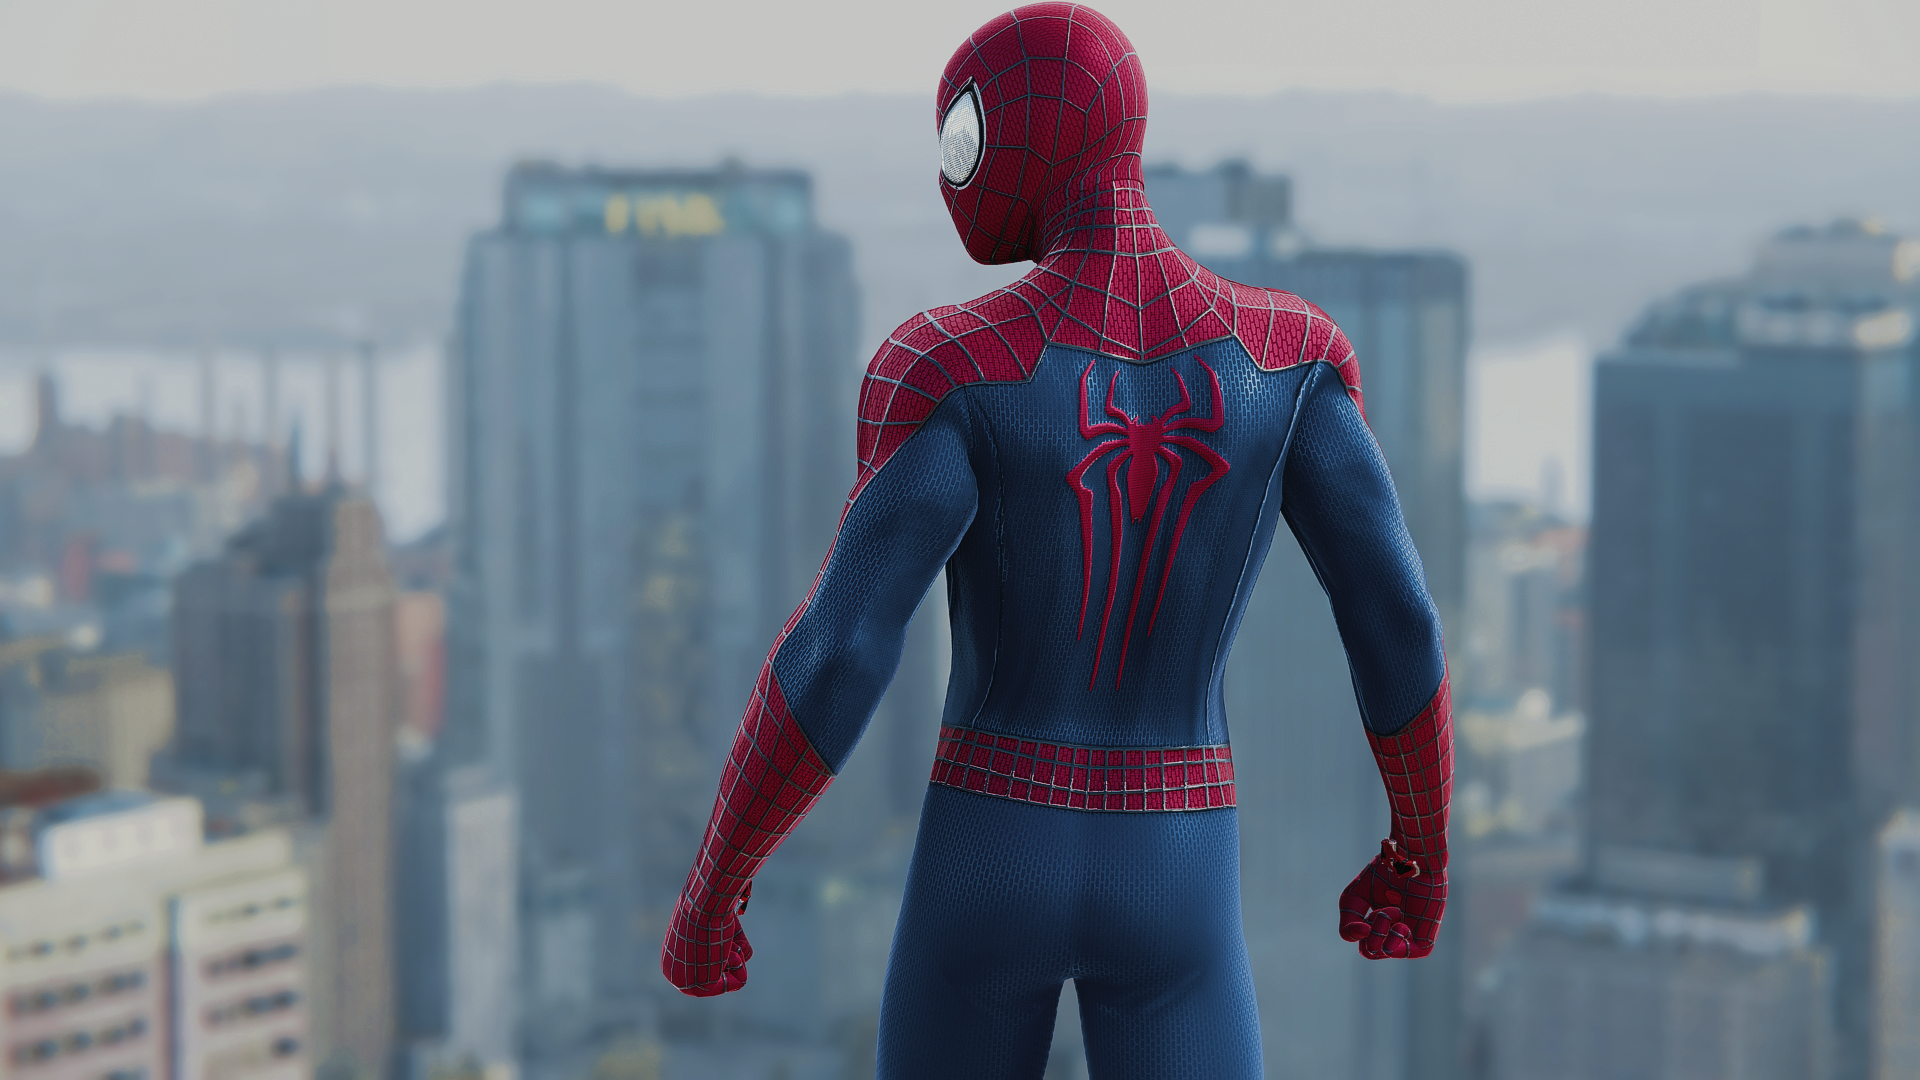 5 new man. Marvel Spider man 2 tasm 2 Suit. Marvel Spider man 2 костюмы. The amazing Spider-man 2 костюмы. Ьфкмуды Spider man 2 костюмы.